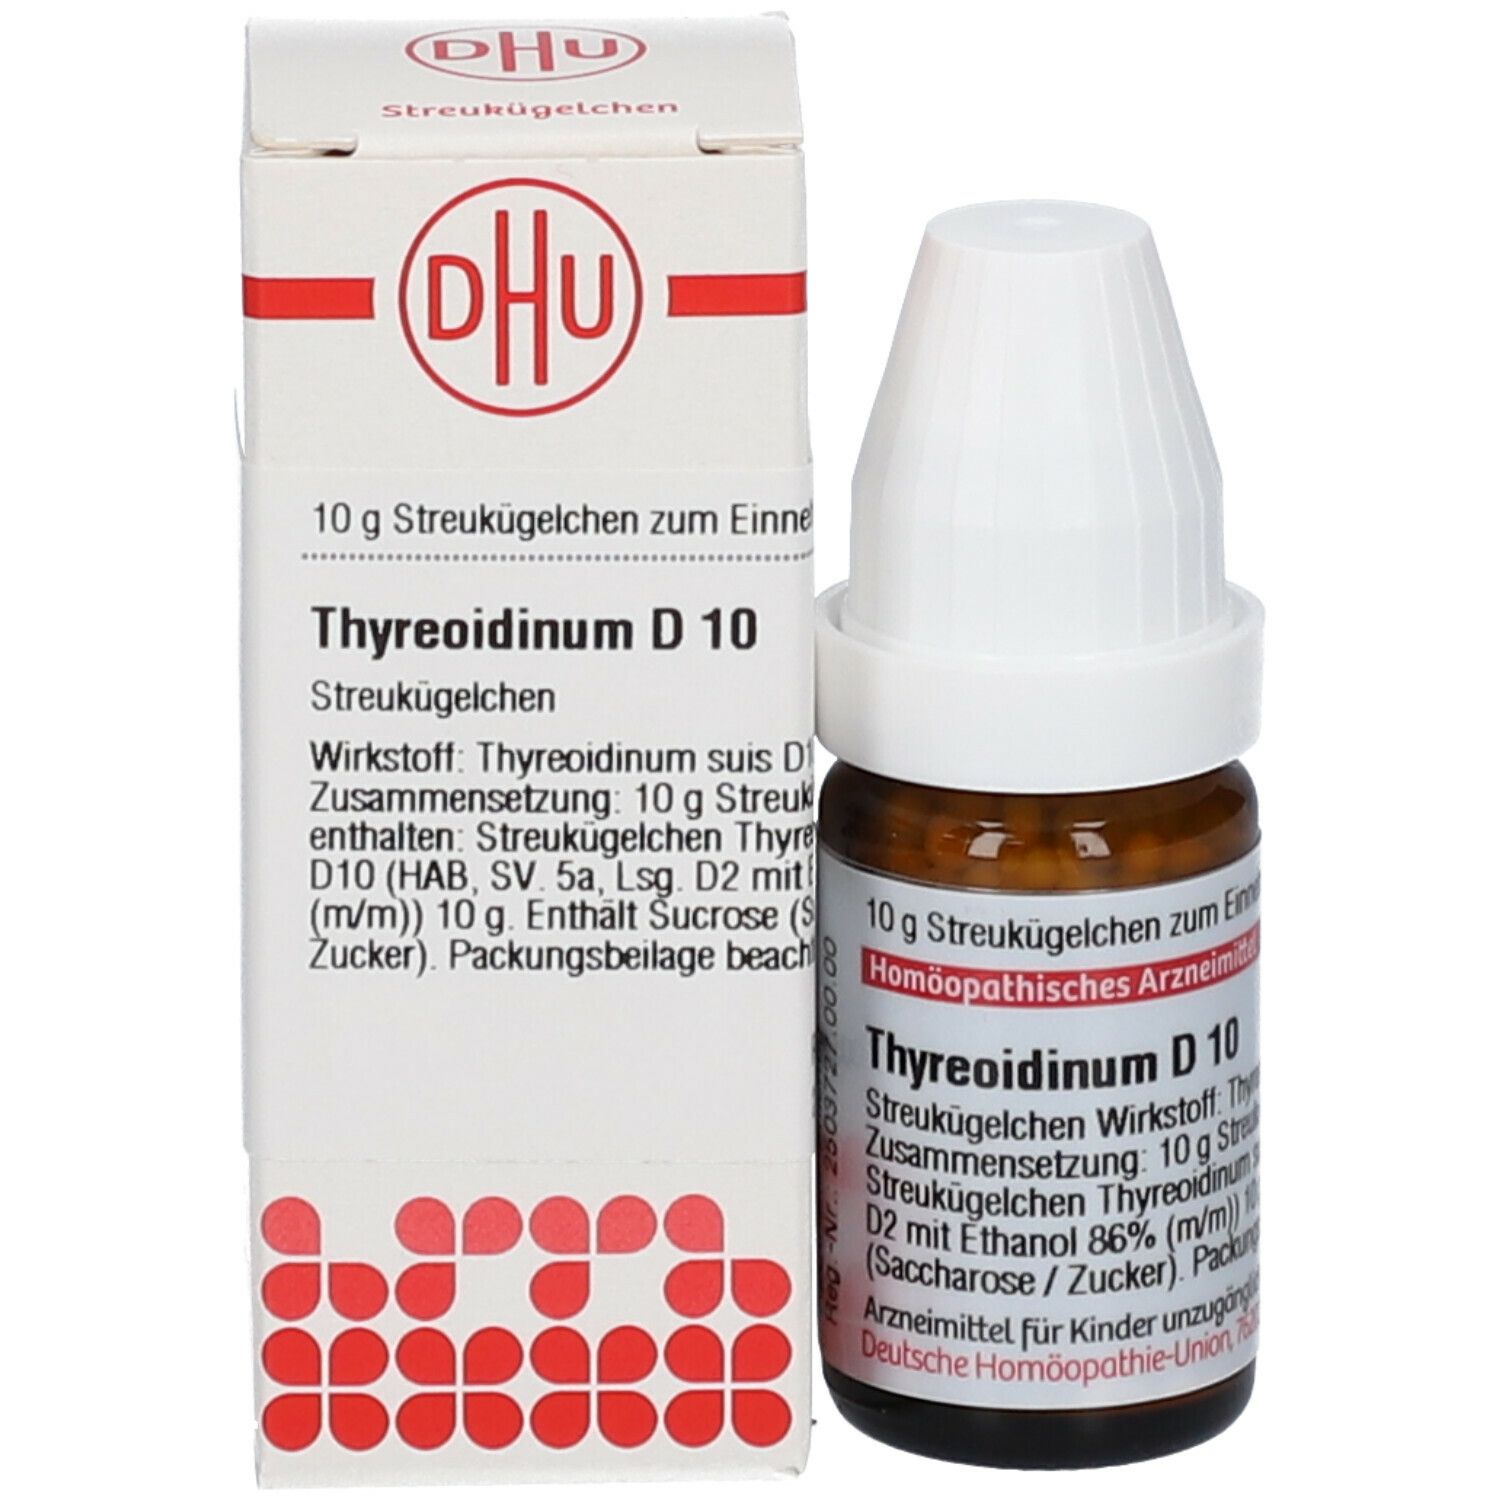 DHU Threoidinum D10